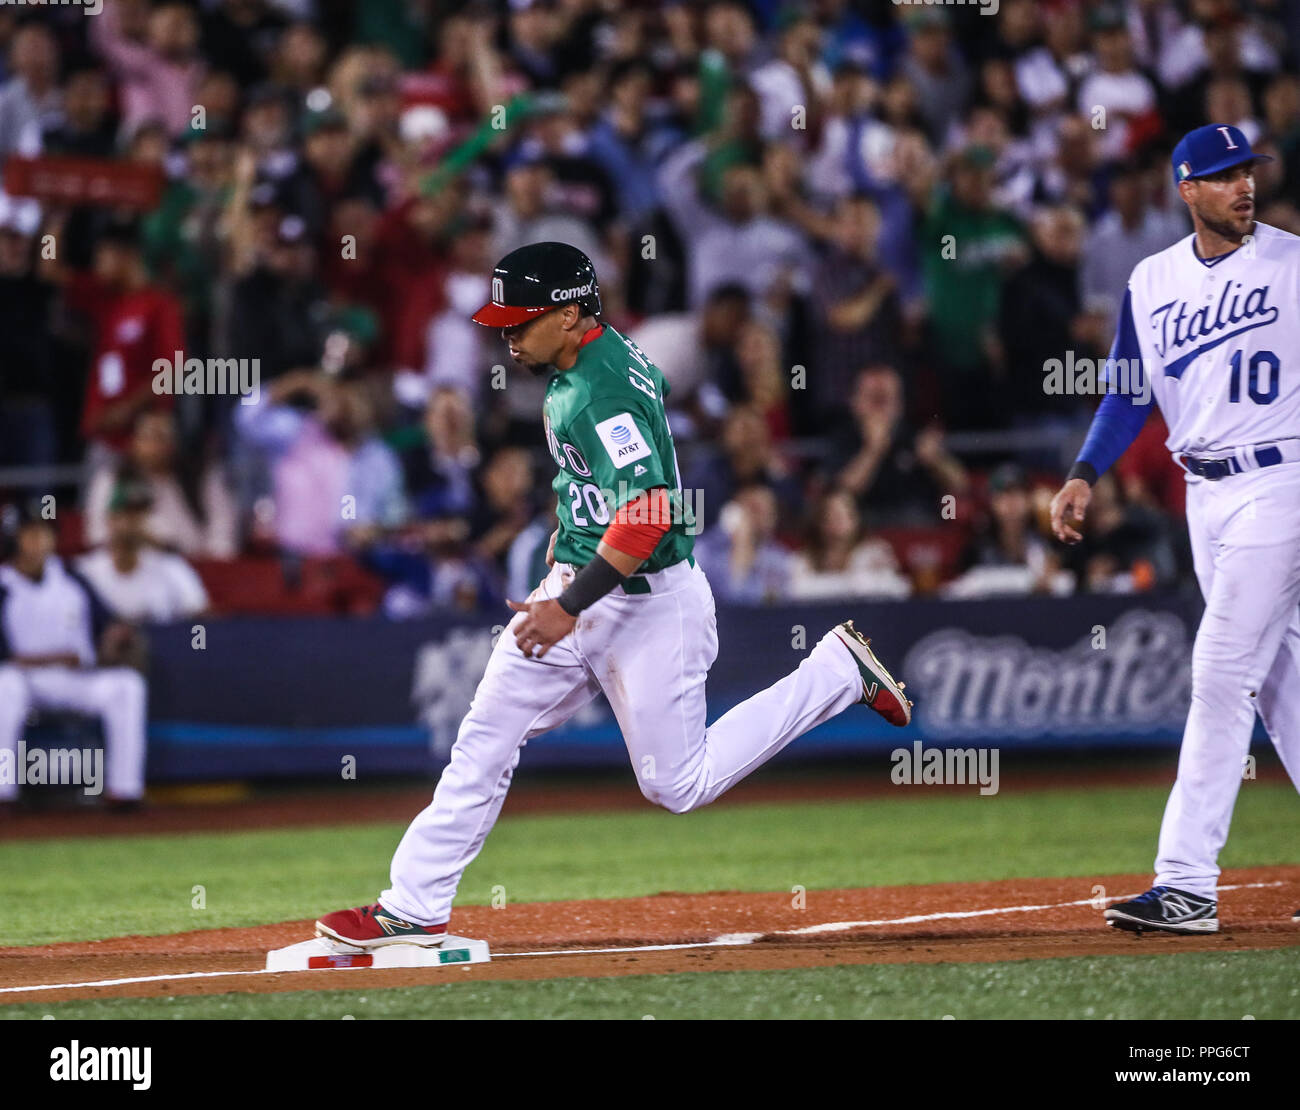 Sebastian Elizalde de Mexico, durante el partido de Mexico vs Italia,Clásico Mundial de Beisbol en el Estadio de Charros de Jalisco. Guadalajara Jali Stock Photo